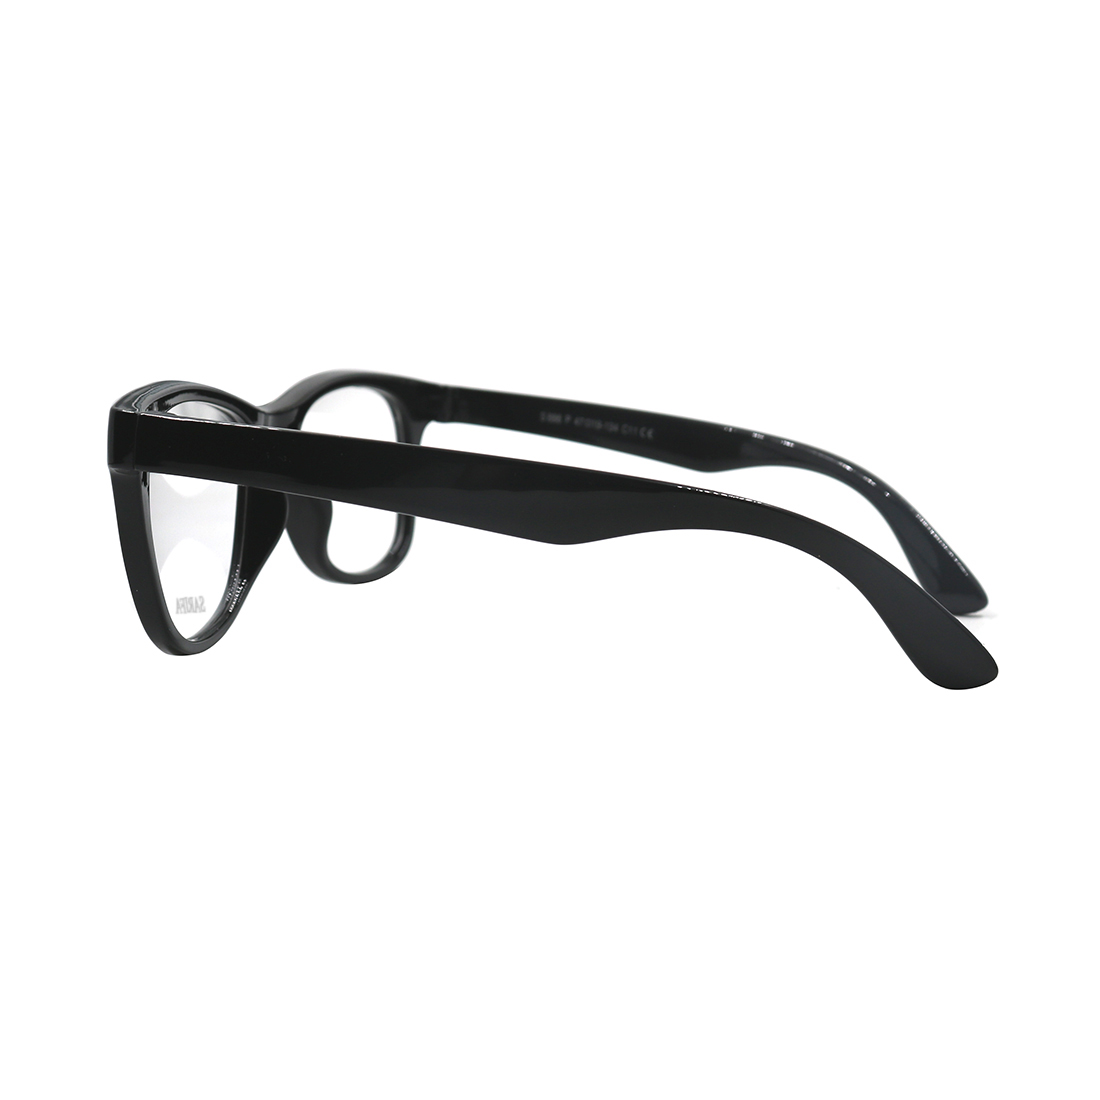 Gọng kính, mắt kính trẻ em SARIFA S886 C11 (47-19-134), mắt kính thời trang